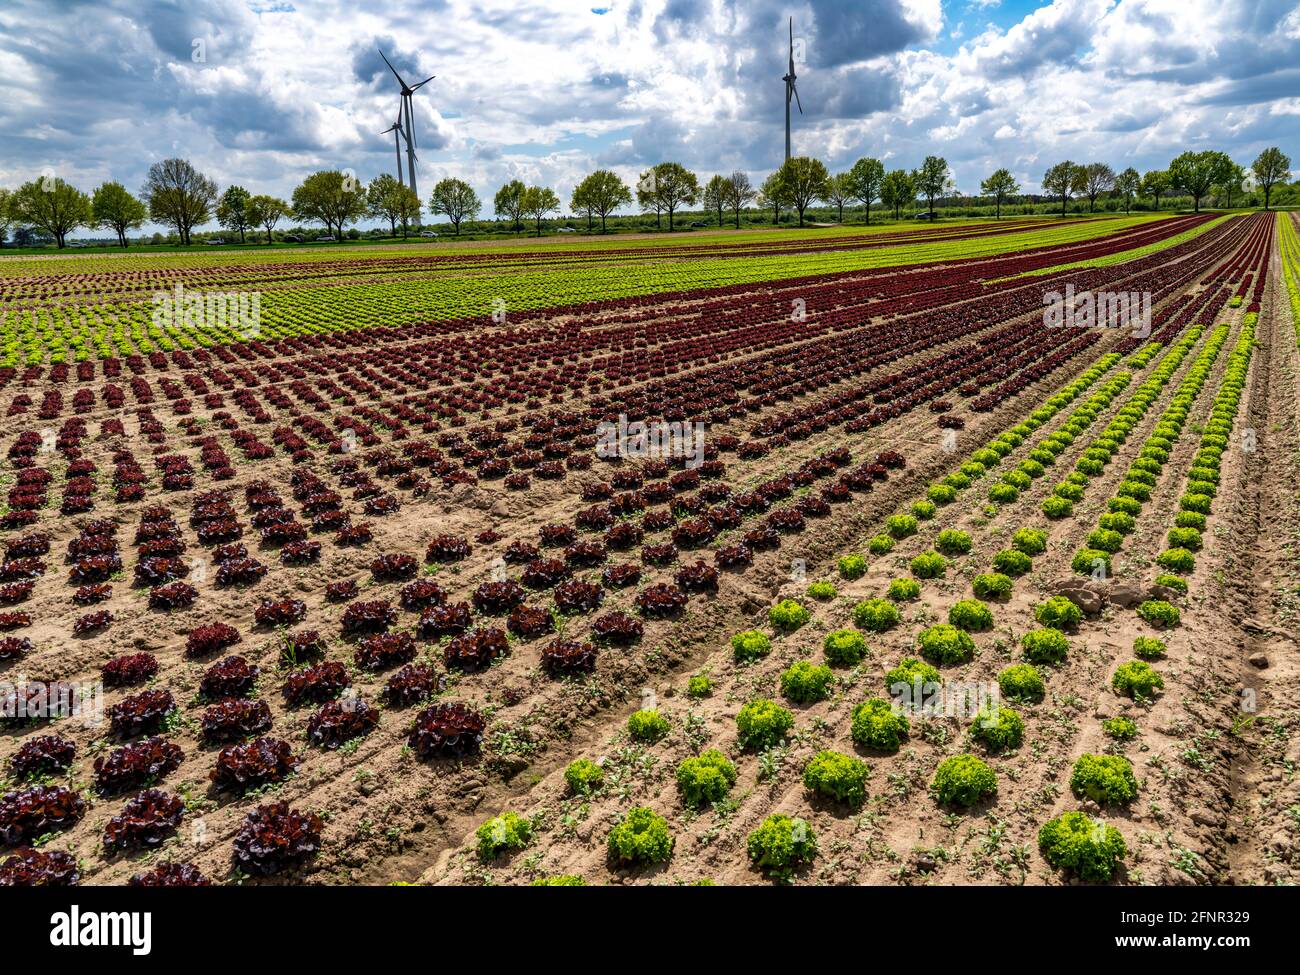 Agriculture, laitue poussant dans un champ, Lollo Bionda et Lollo Rossa, dans de longues rangées de plantes, dans différents stades de croissance, NRW, Allemagne Banque D'Images